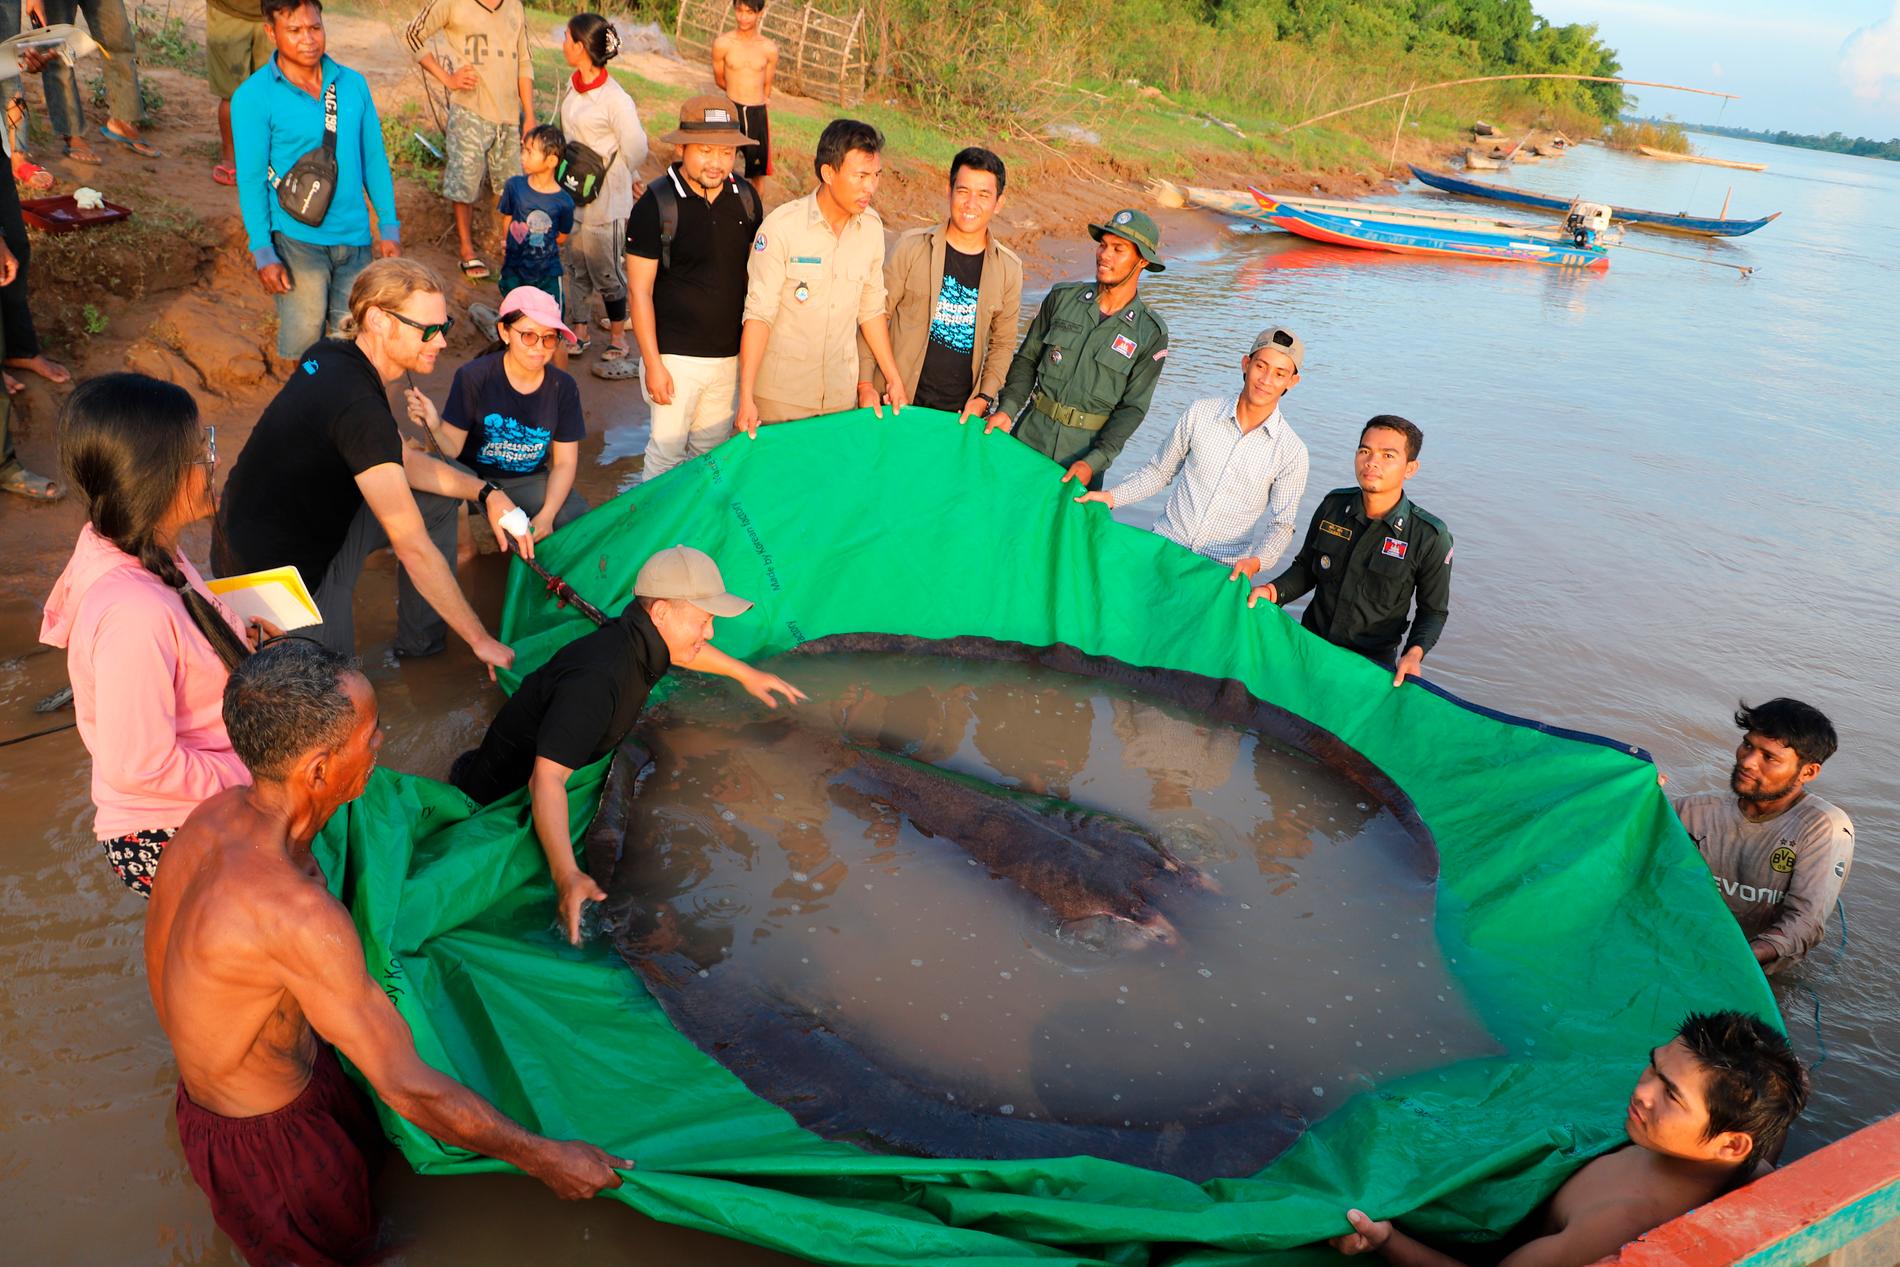 Kambodjanska och amerikanska forskare släpper tillbaka den 300 kilo tunga rockan i vattnet.